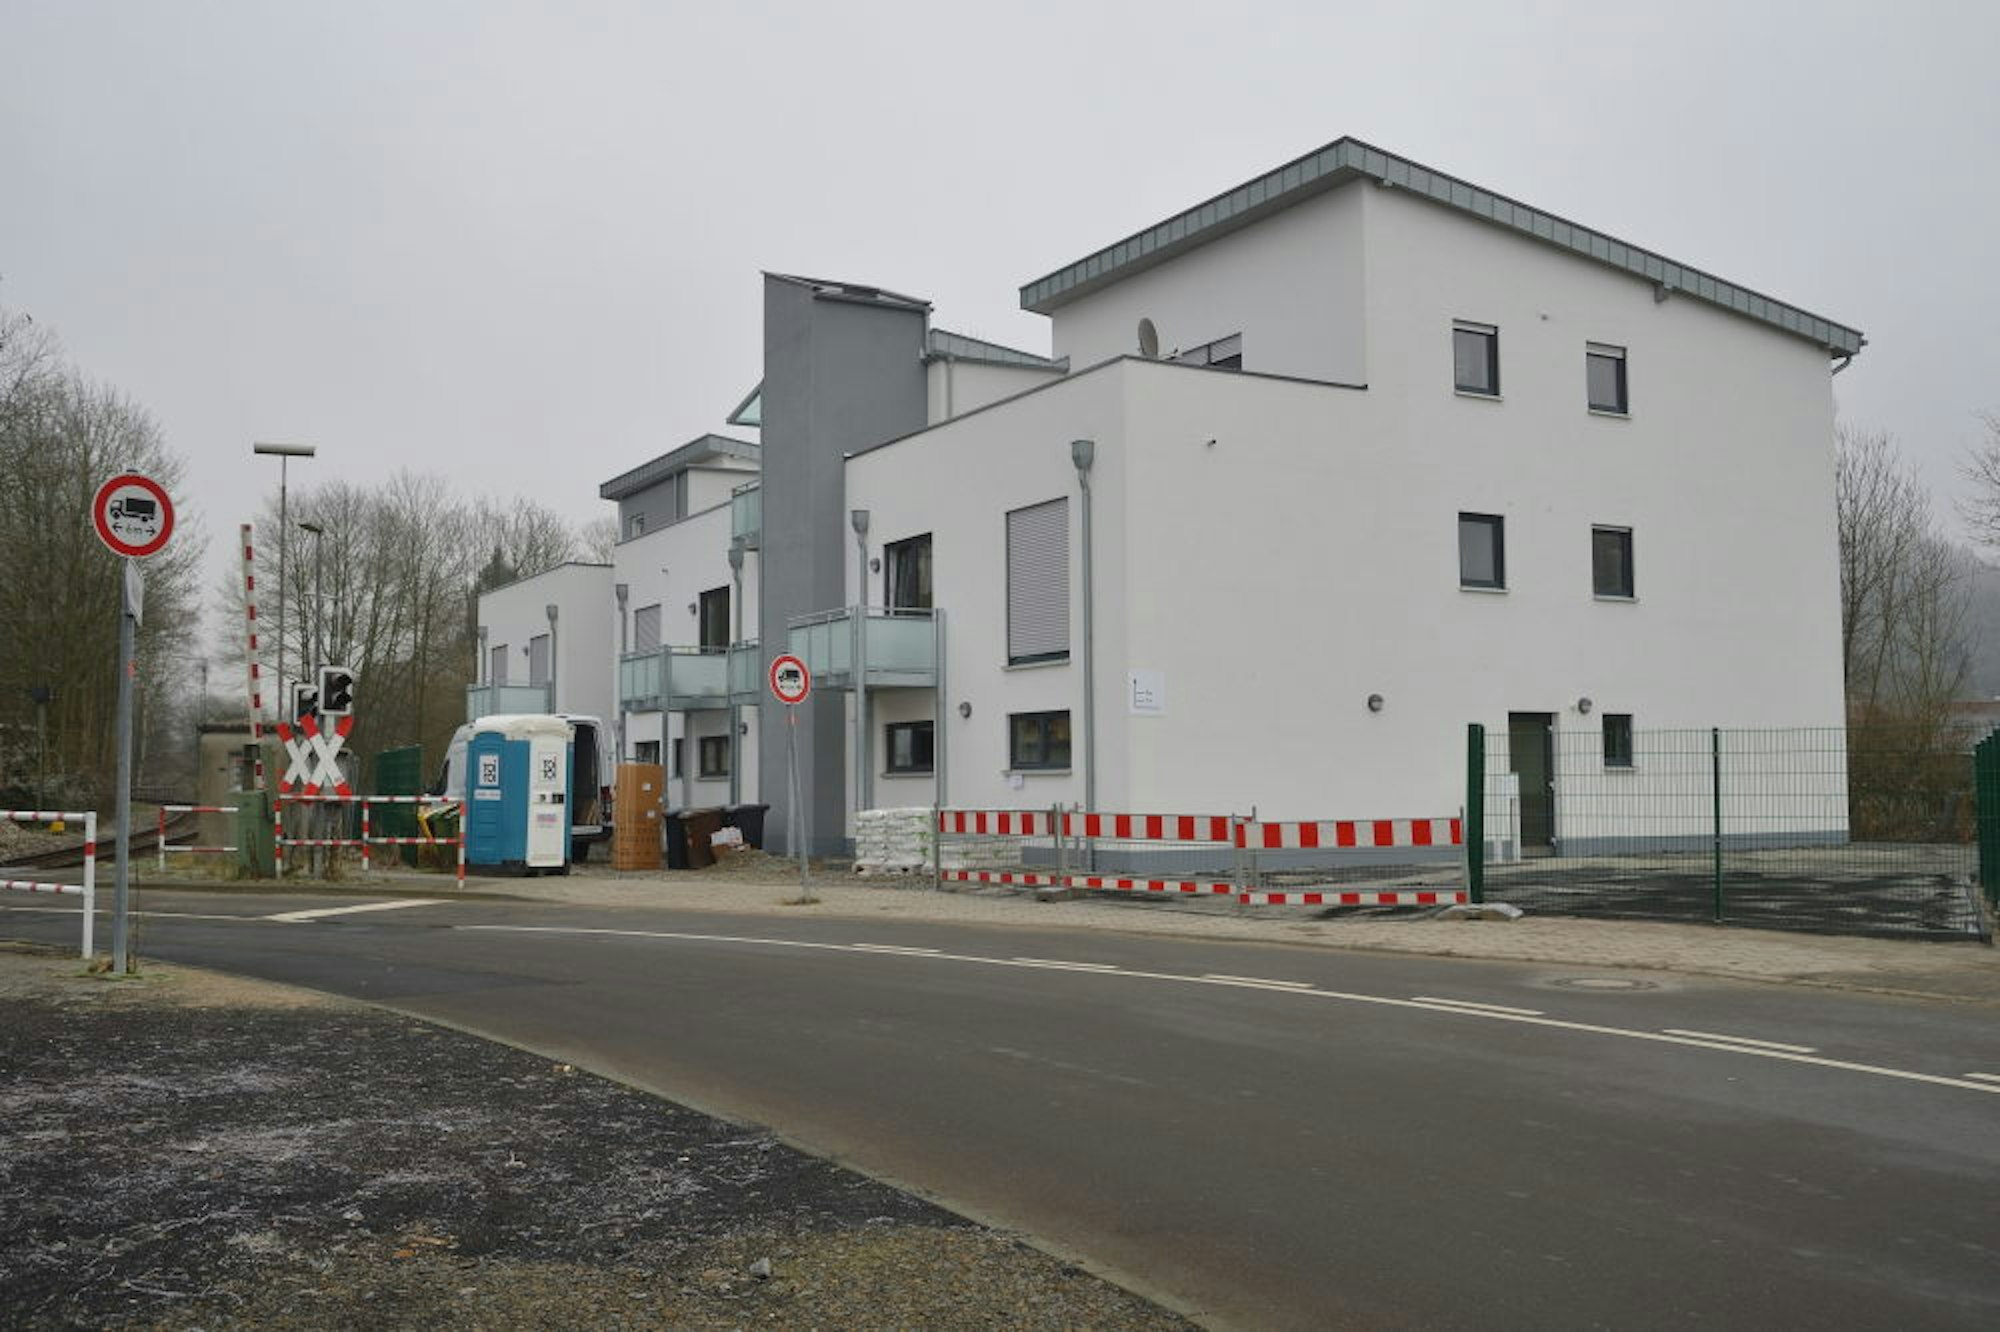 Zwischen Bahn und Agger hat die Stadtentwicklungsgesellschaft nach einem Ratsbeschluss das Gebäude errichtet. Fotos: Arlinghaus